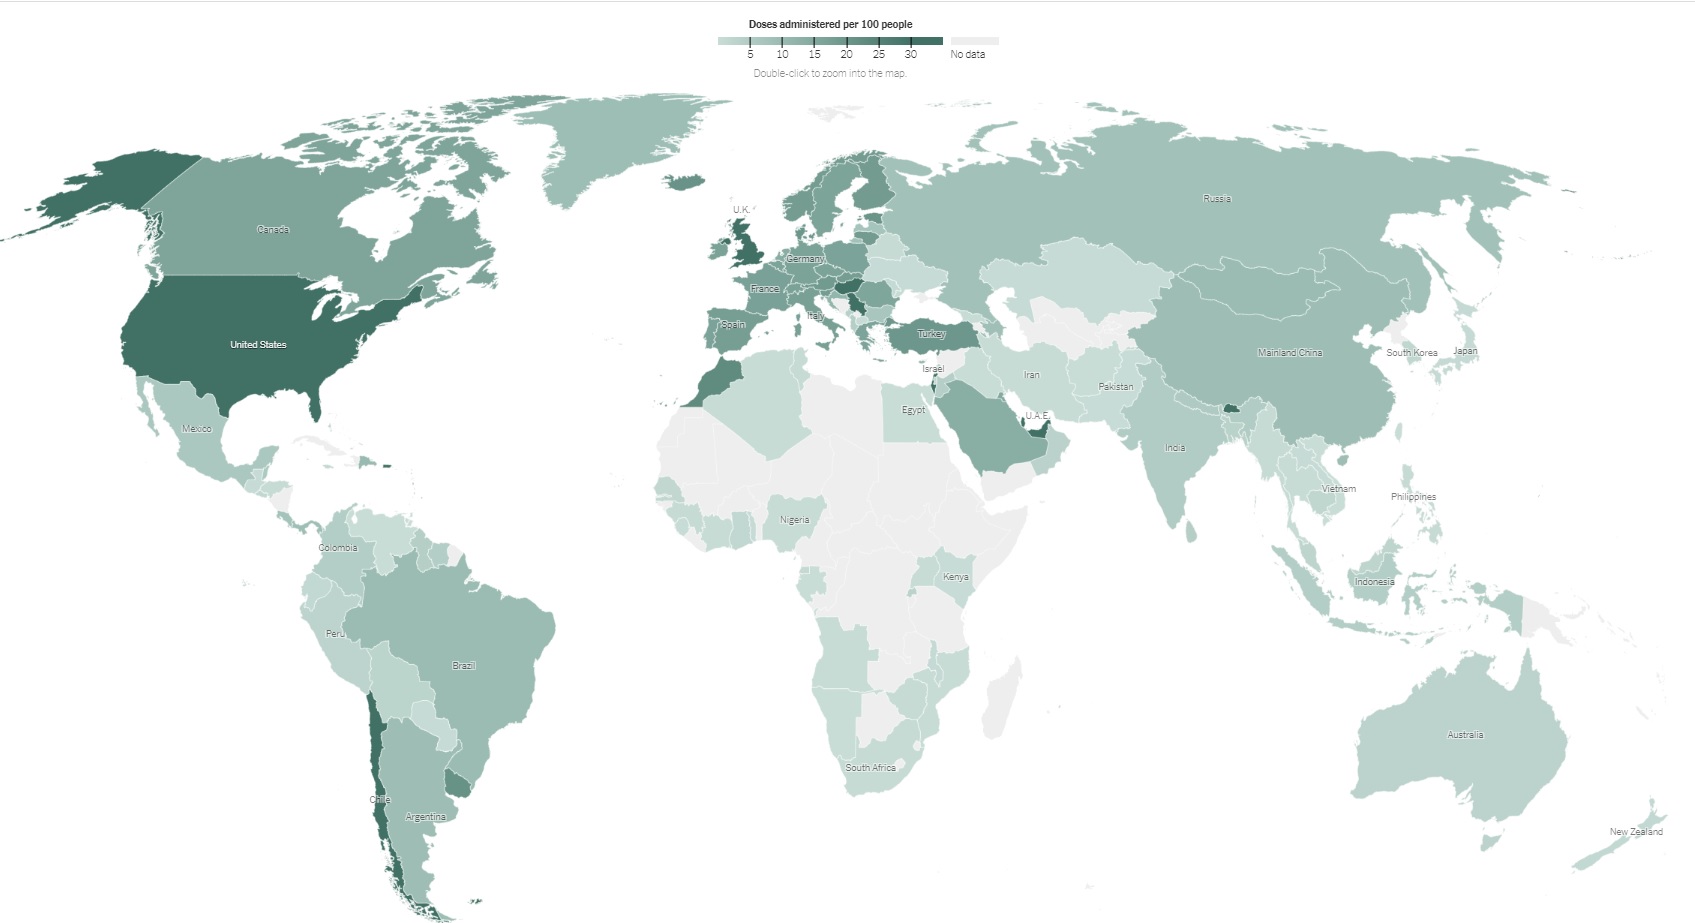 写真・図版 : コロナワクチン接種者の人口に占める割合は国よってかなり違う。色の濃い国ほど高い（グレーの国はデータなし）。ワクチンを1回接種した人の割合は、4月2日時点でイスラエルは59％、日本は0.7％。